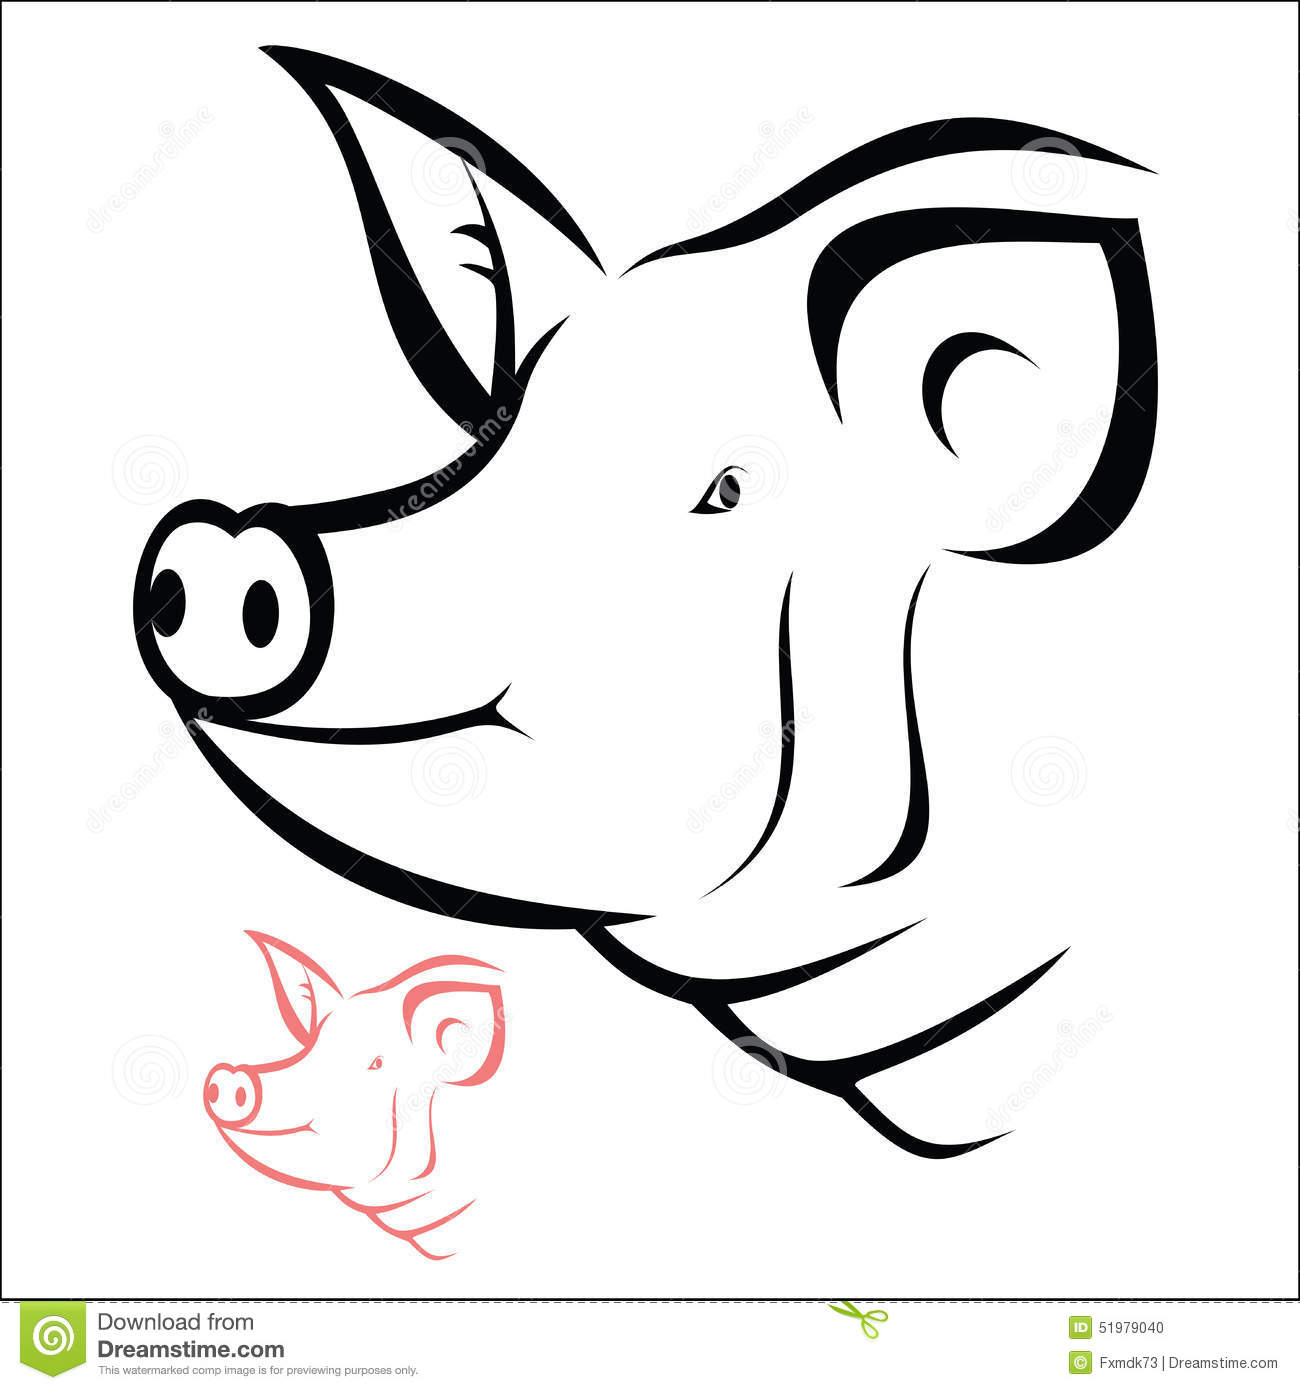 Pig Head Stock Vector - Image: 51979040 à Dessin De Tete De Cochon